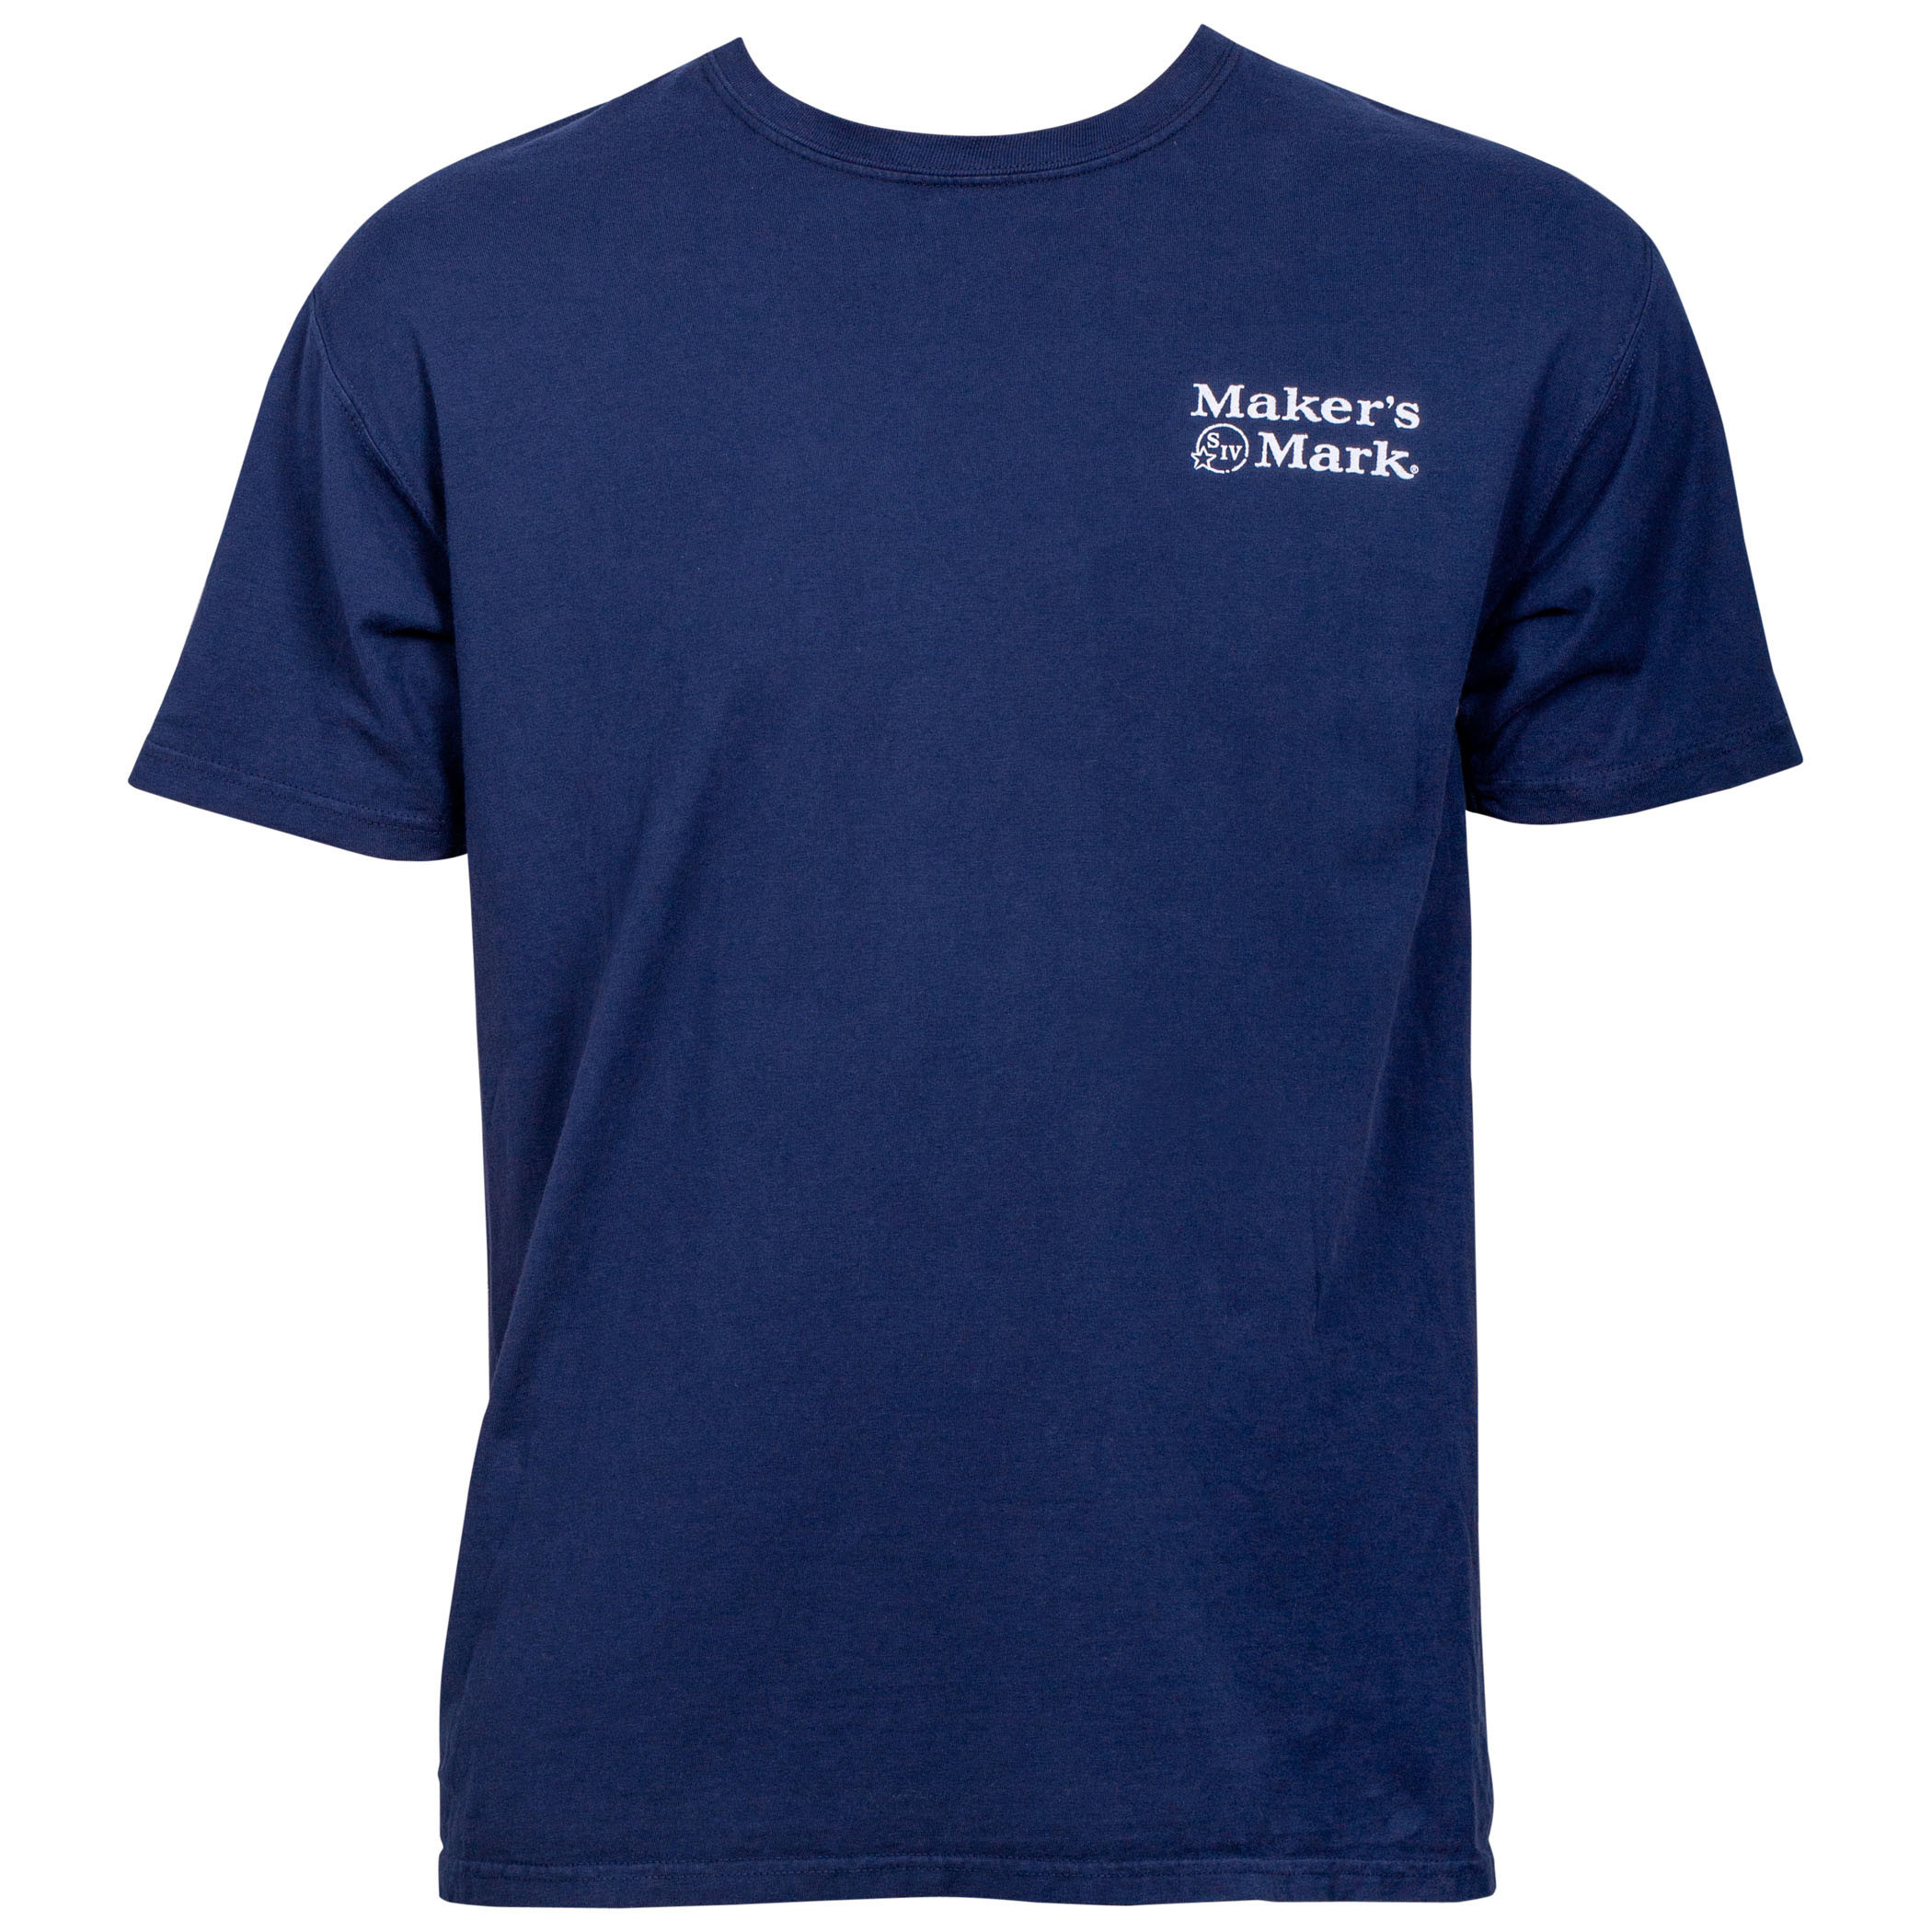 Maker's Mark Bottle Blue Print Eco Friendly Garment T-Shirt